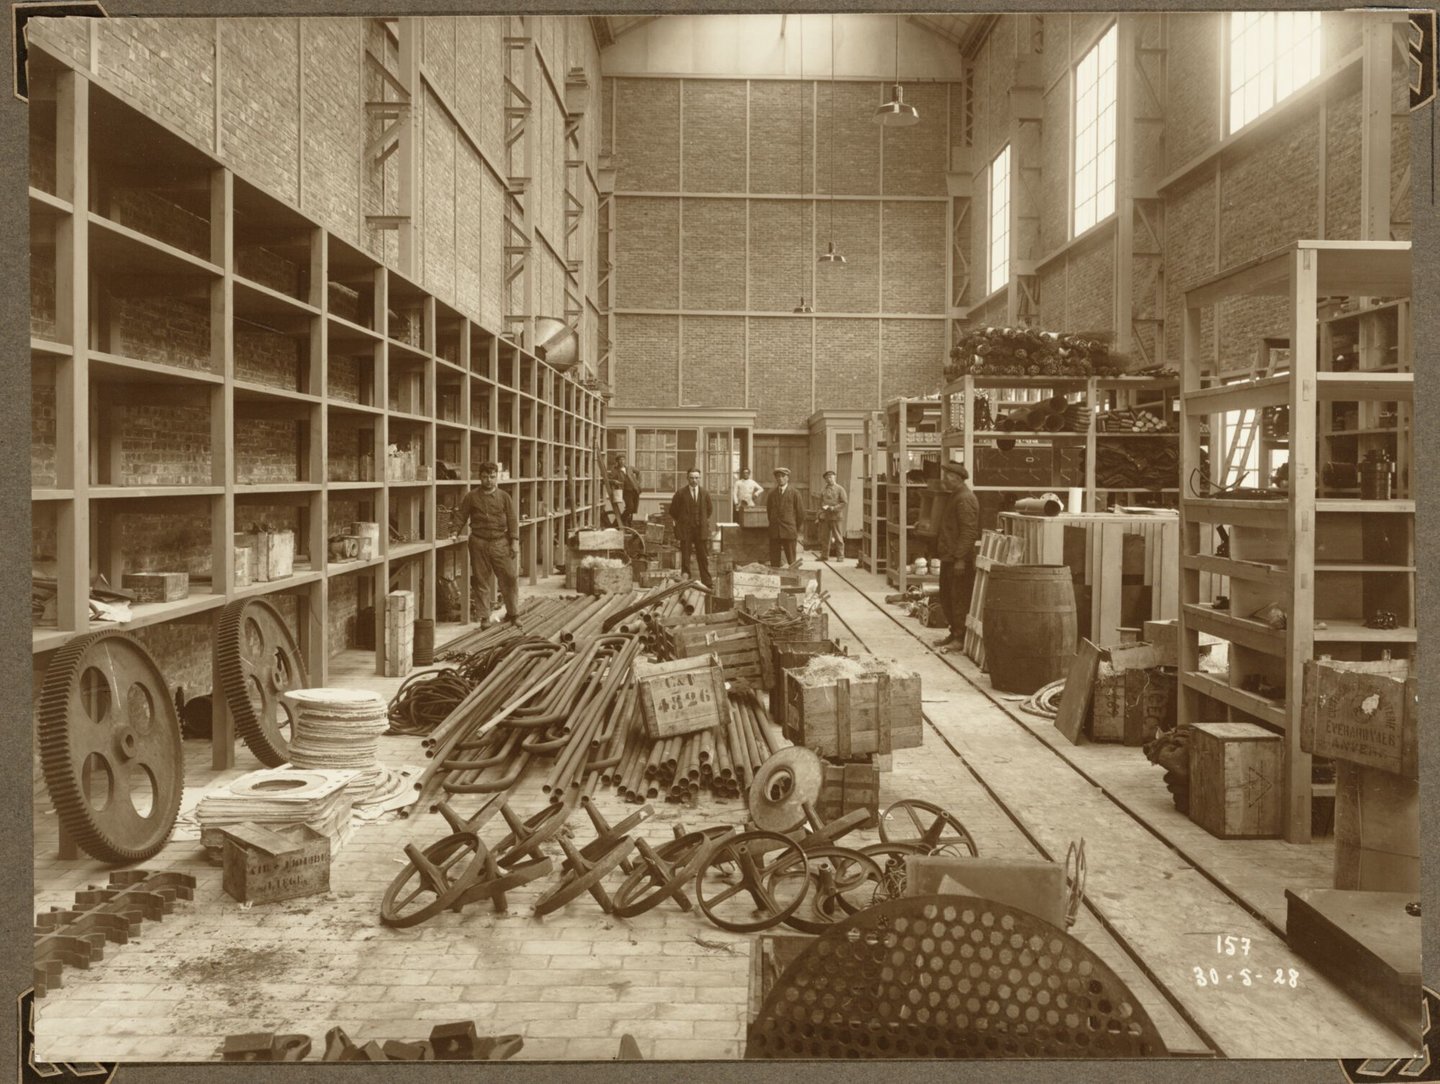 Bouw van algemeen magazijn van ammoniakfabriek van cokesfabriek Kuhlmann in Zelzate